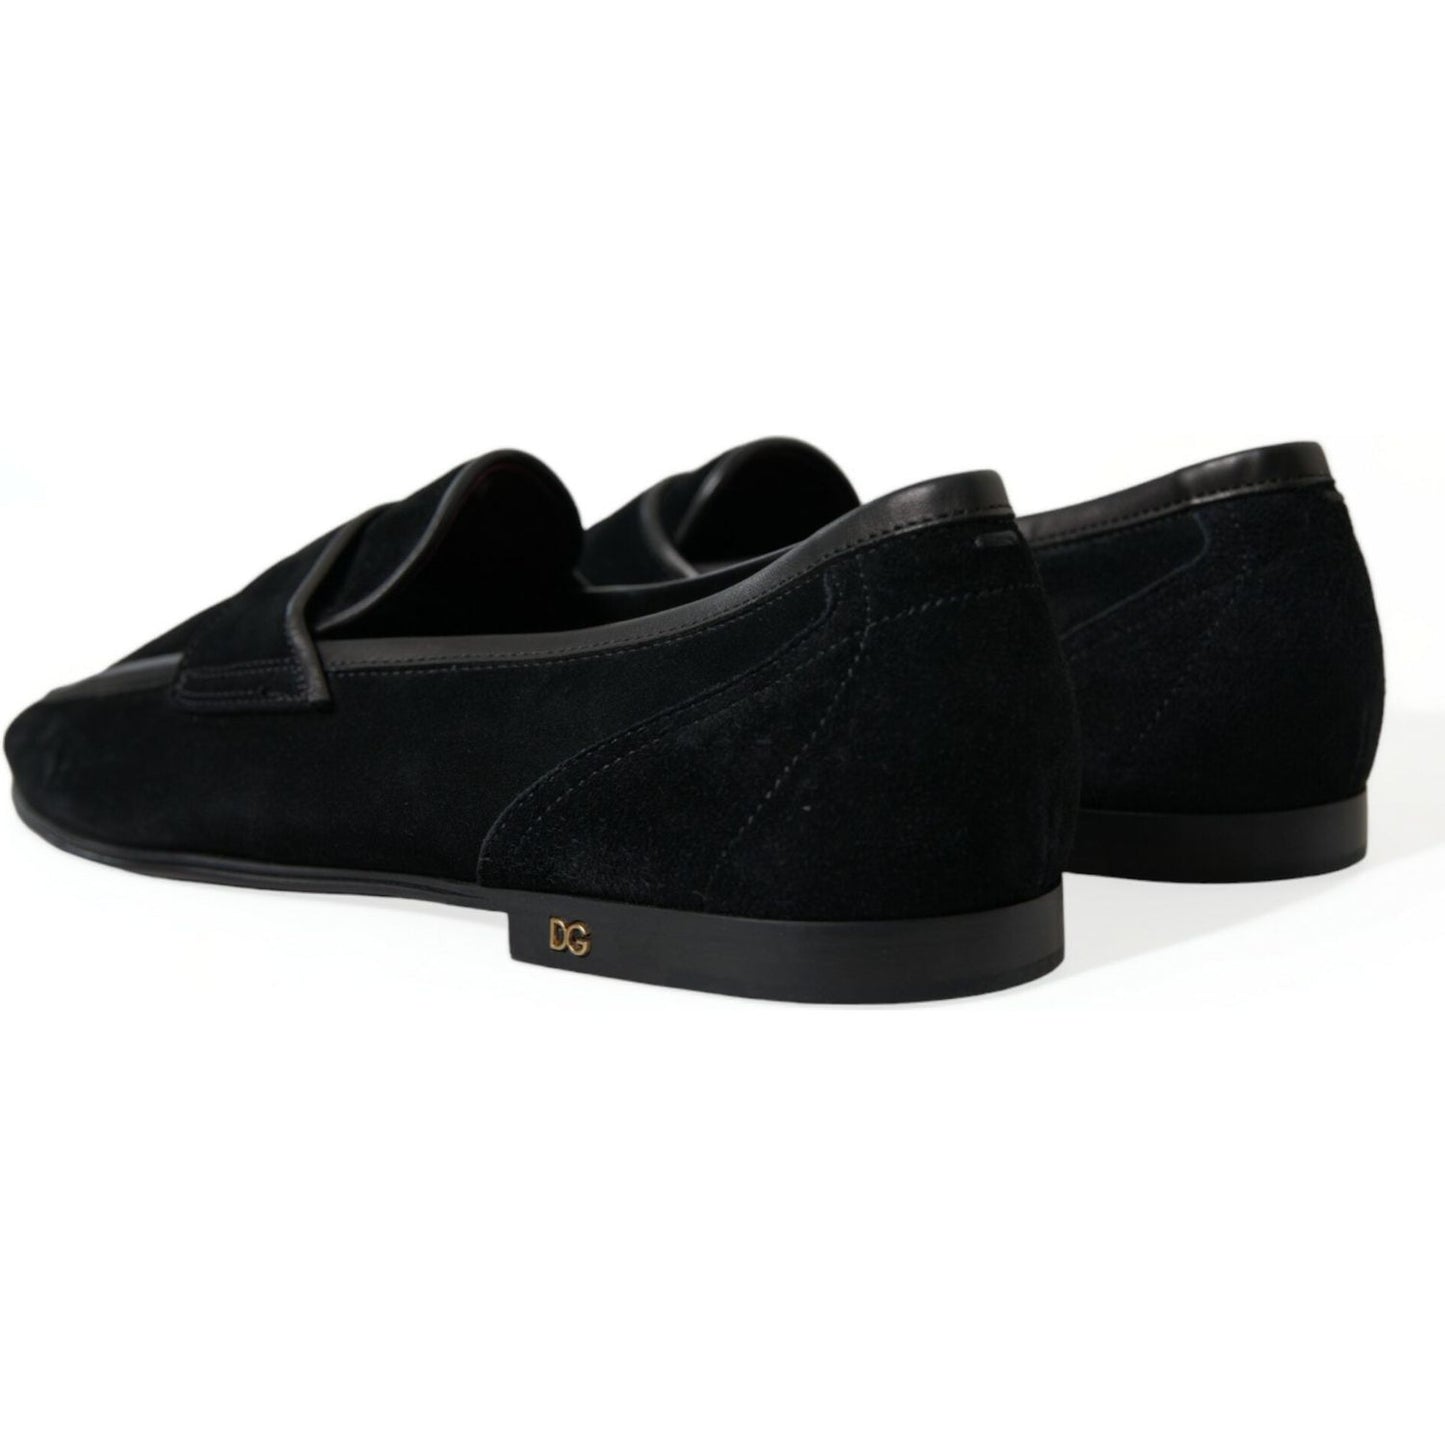 Dolce & Gabbana Elegant Velvet Black Loafers for Men black-velvet-slip-on-loafers-dress-shoes